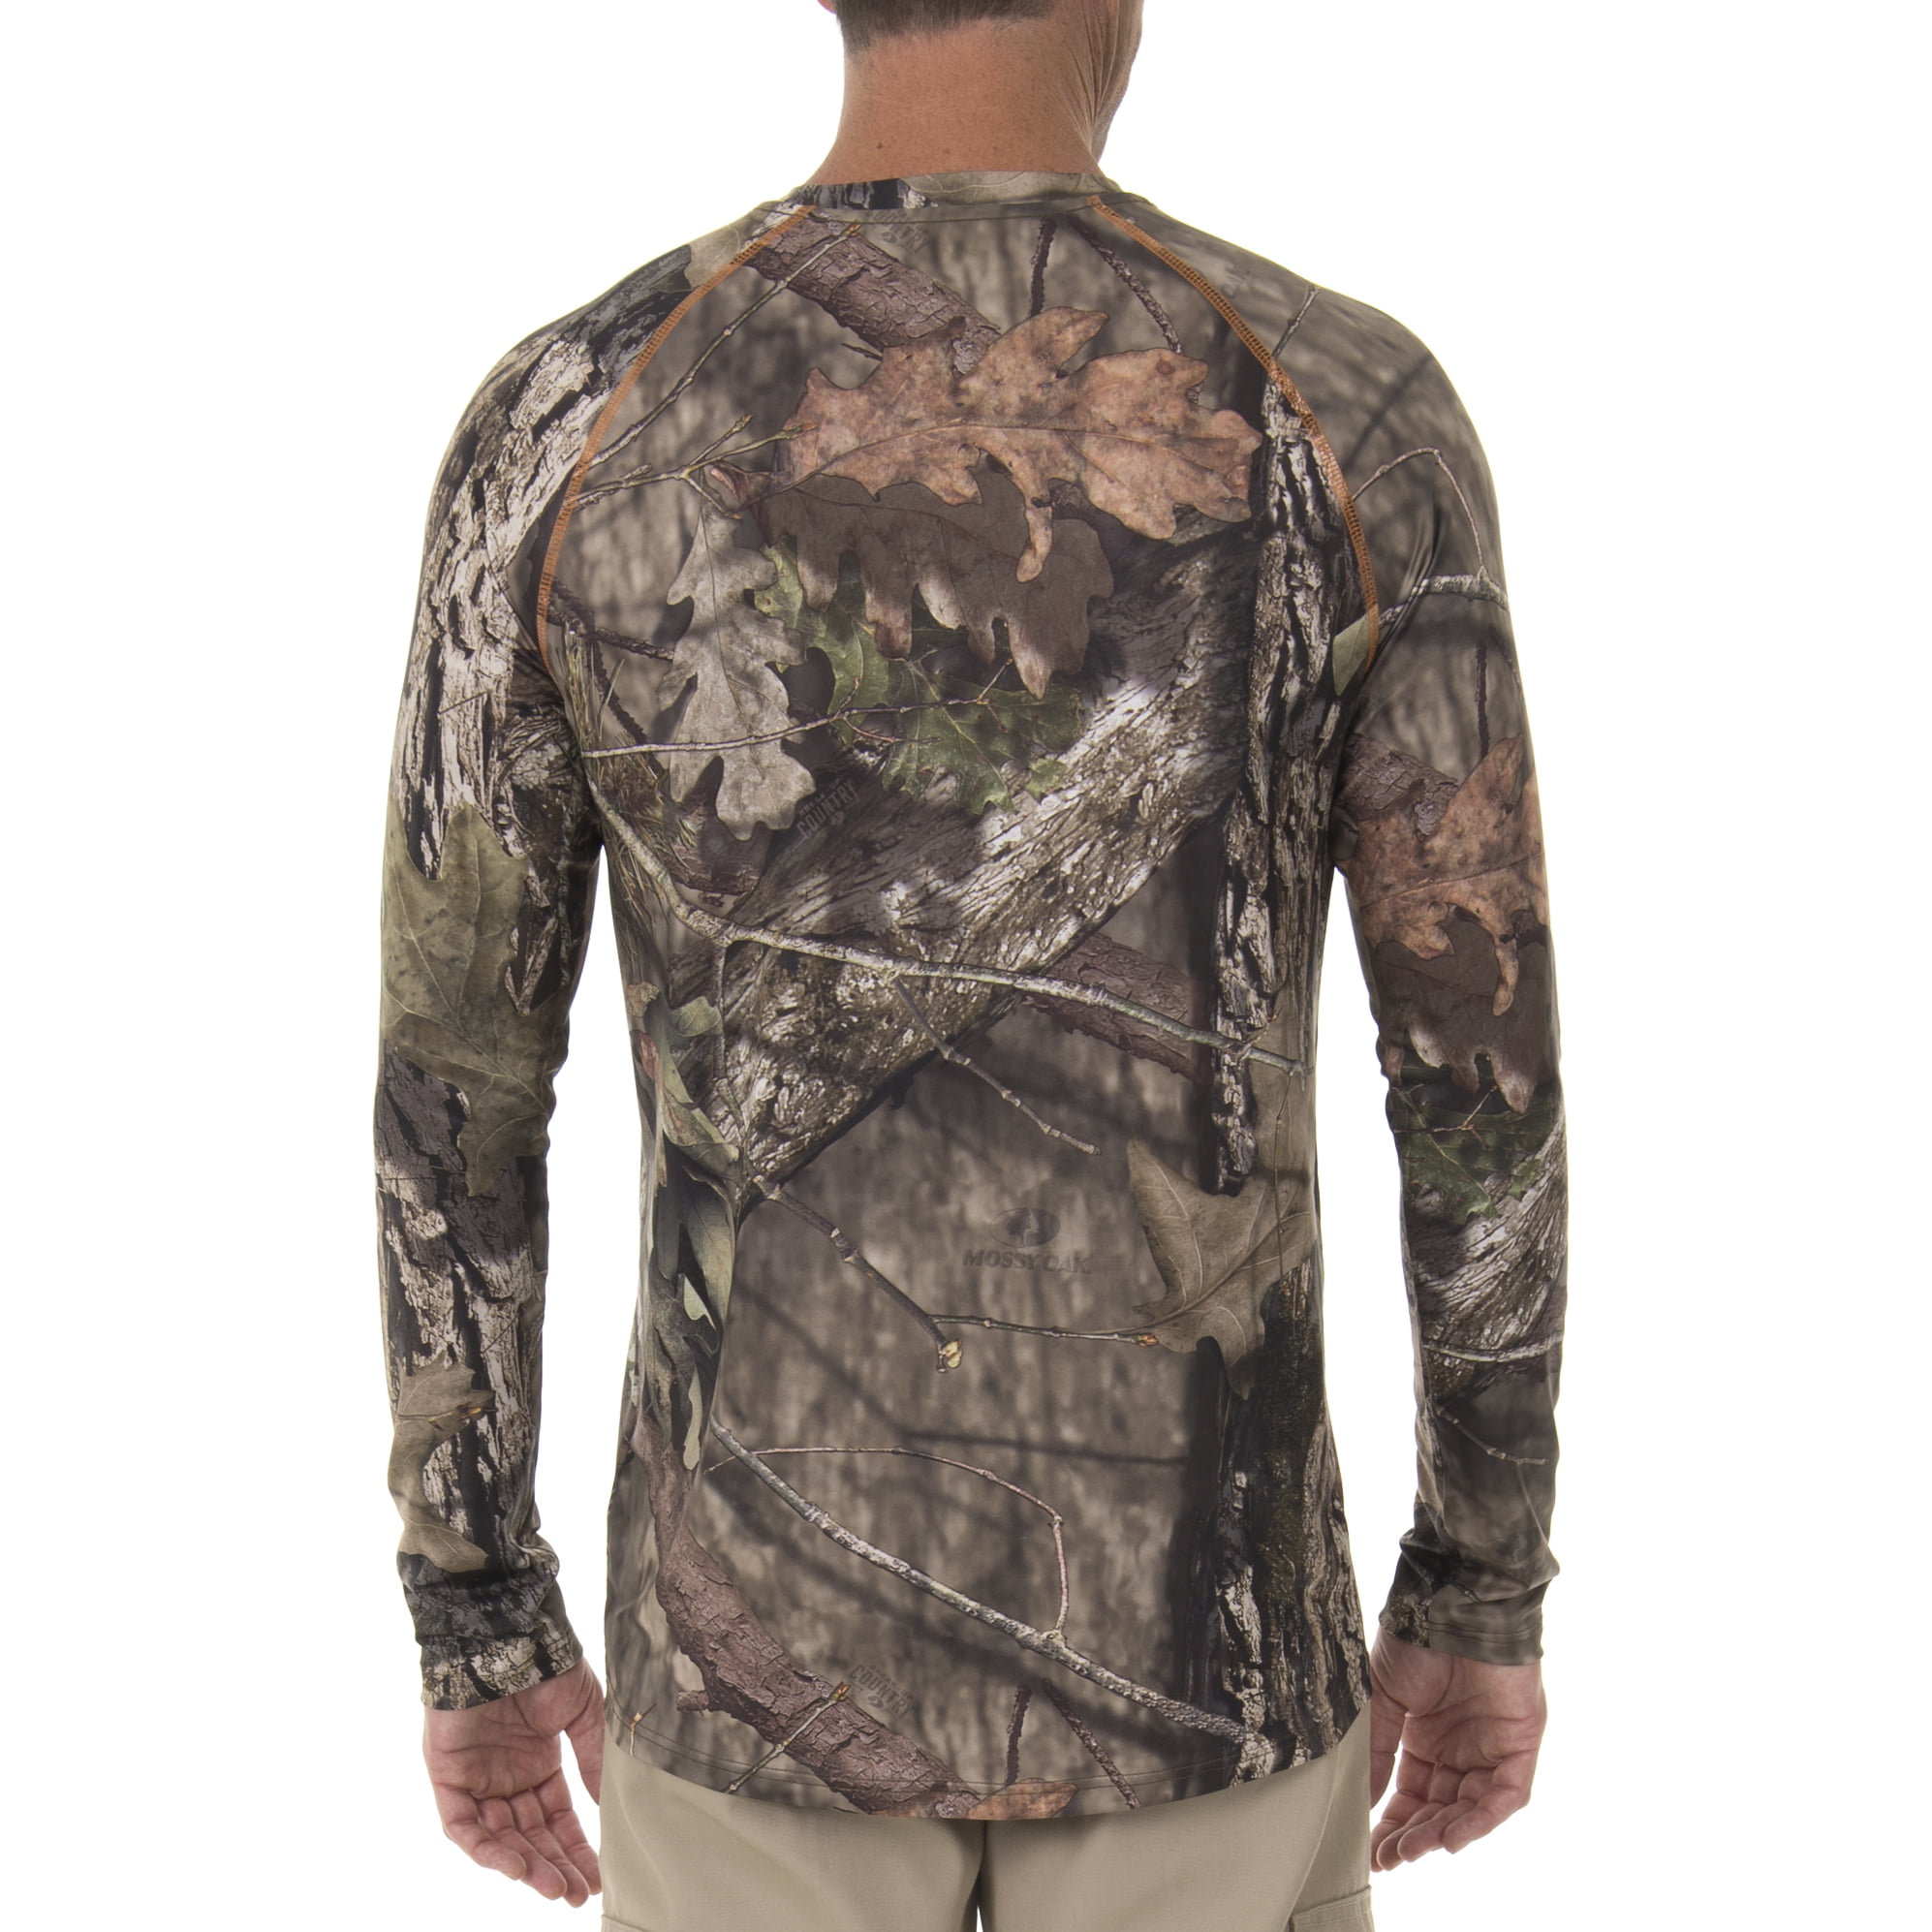 Mossy oak shirt long sleeve mossy oak shirts for men tree camo hunting fishing